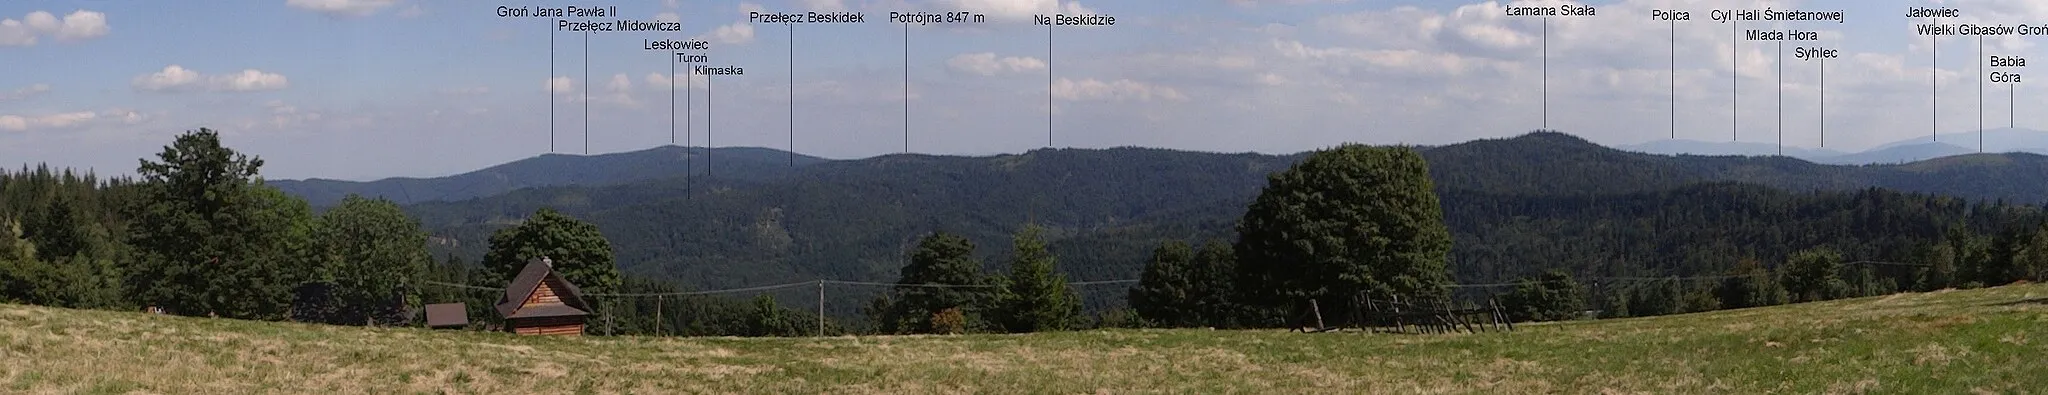 Photo showing: Pasnorama widokowa z Potrójnej